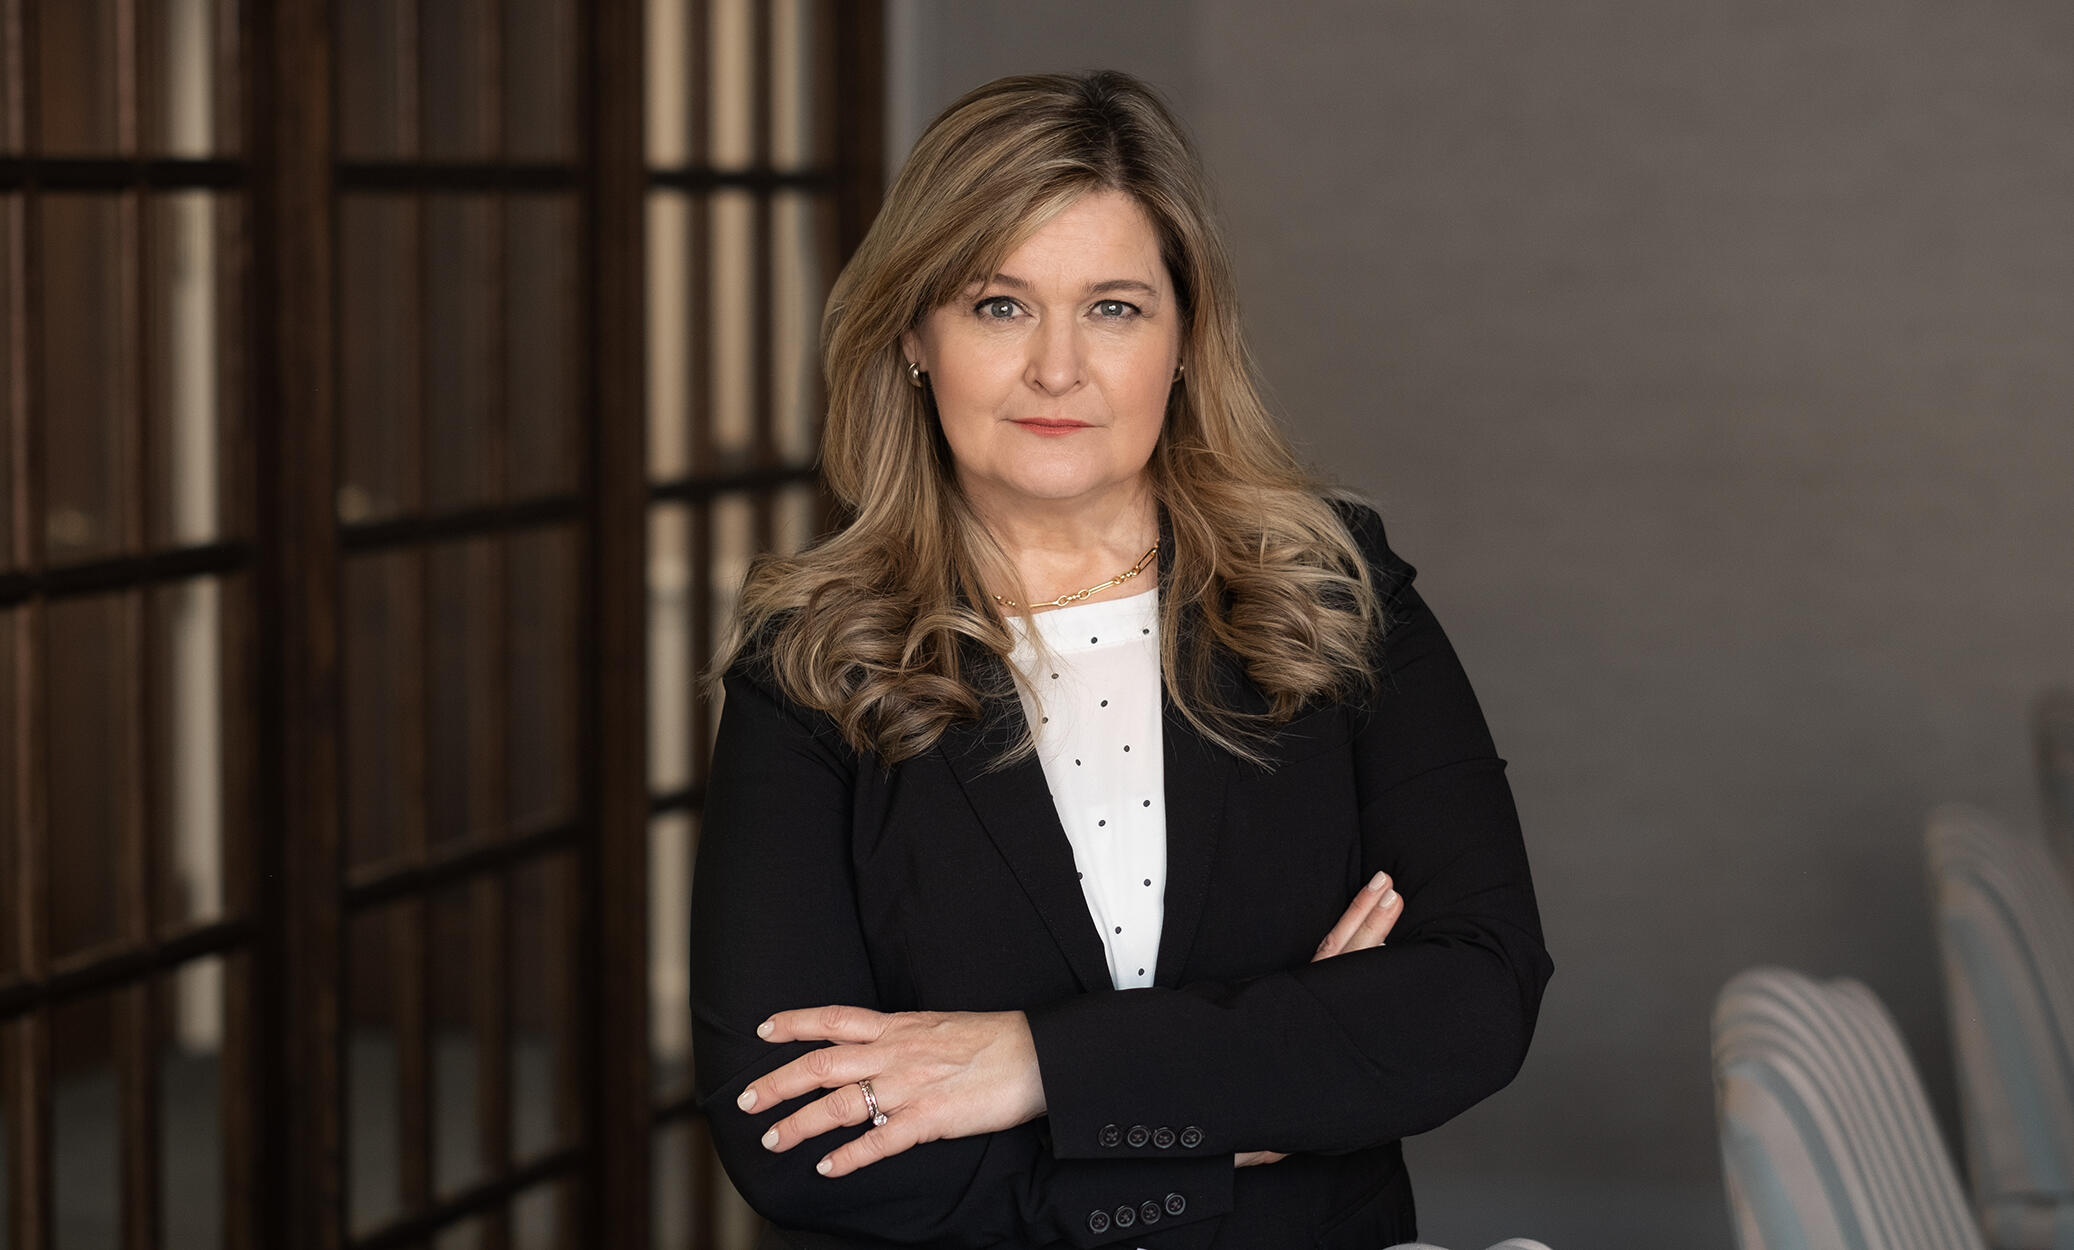 Deborah Metzger Mulvey Attorney - Debbie Metzger Mulvey Lawyer